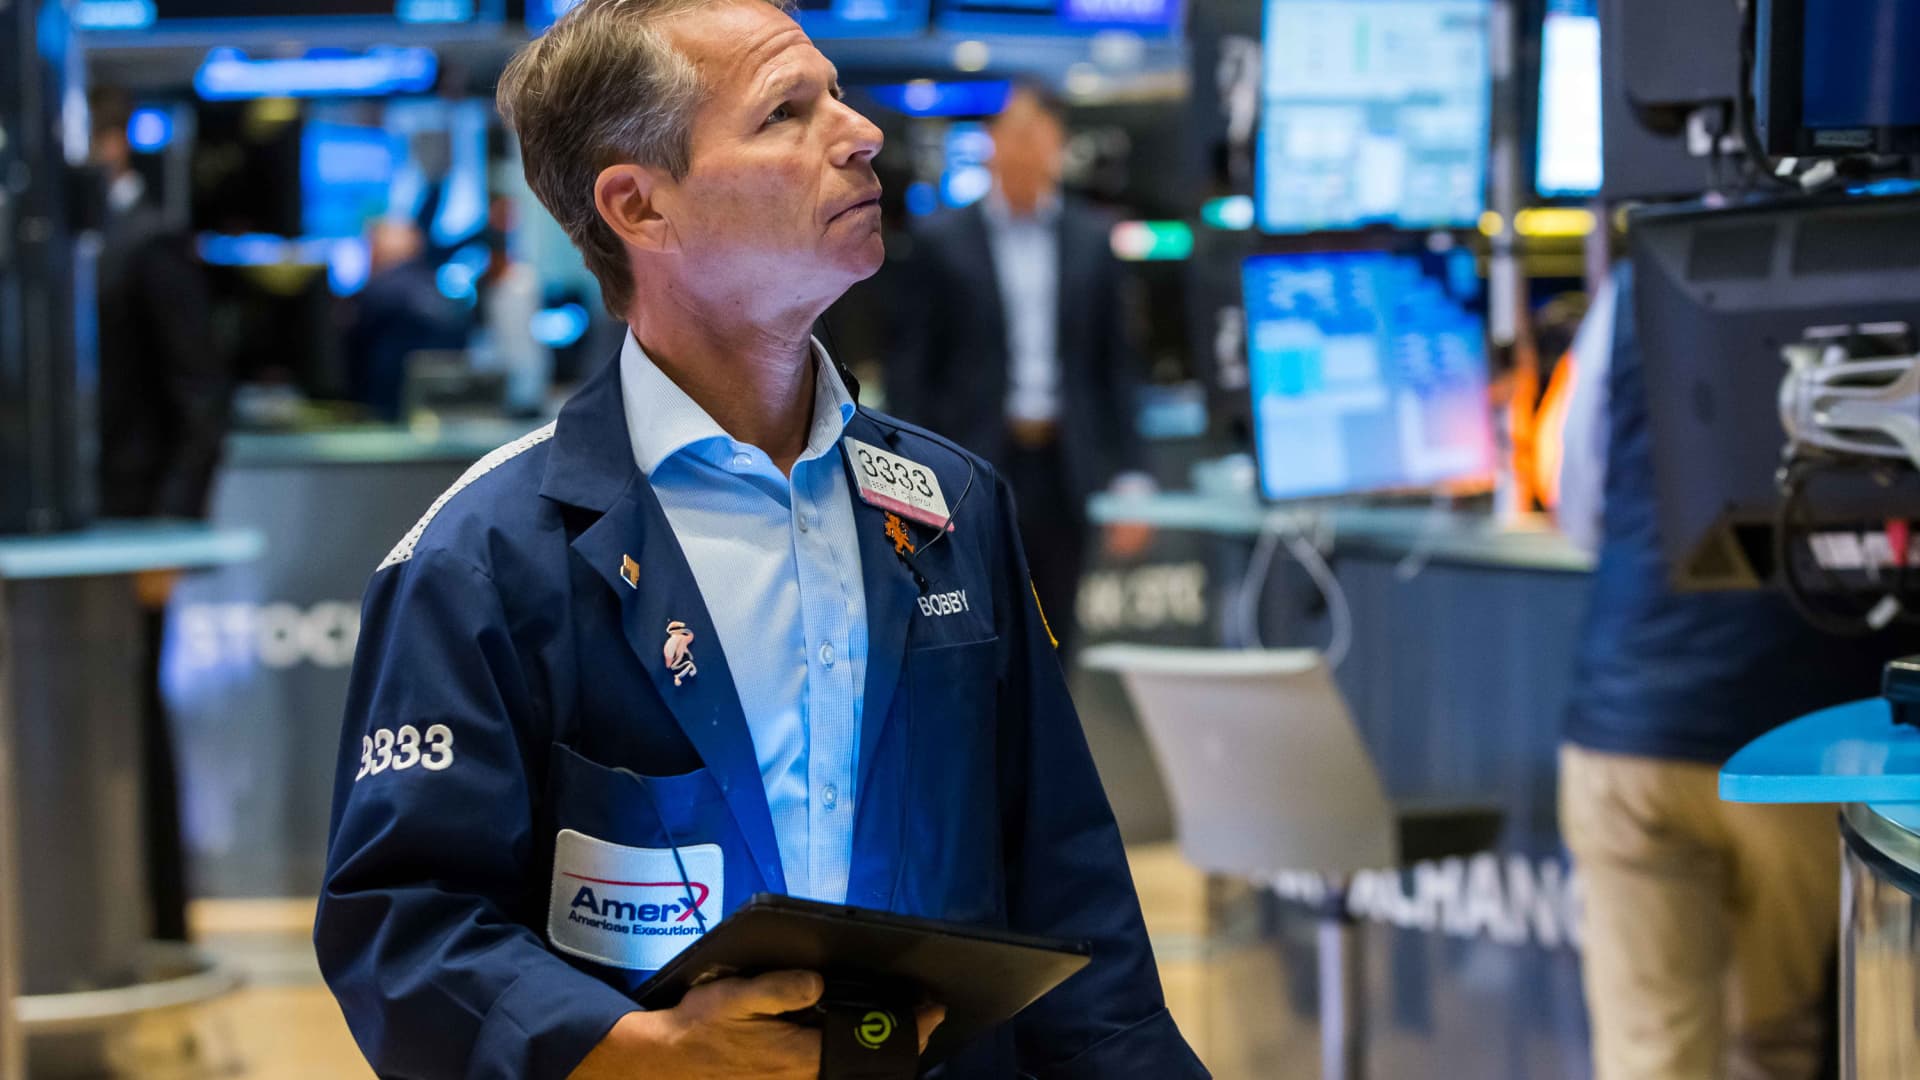 Los futuros de acciones suben mientras Wall Street espera el informe clave de inflación